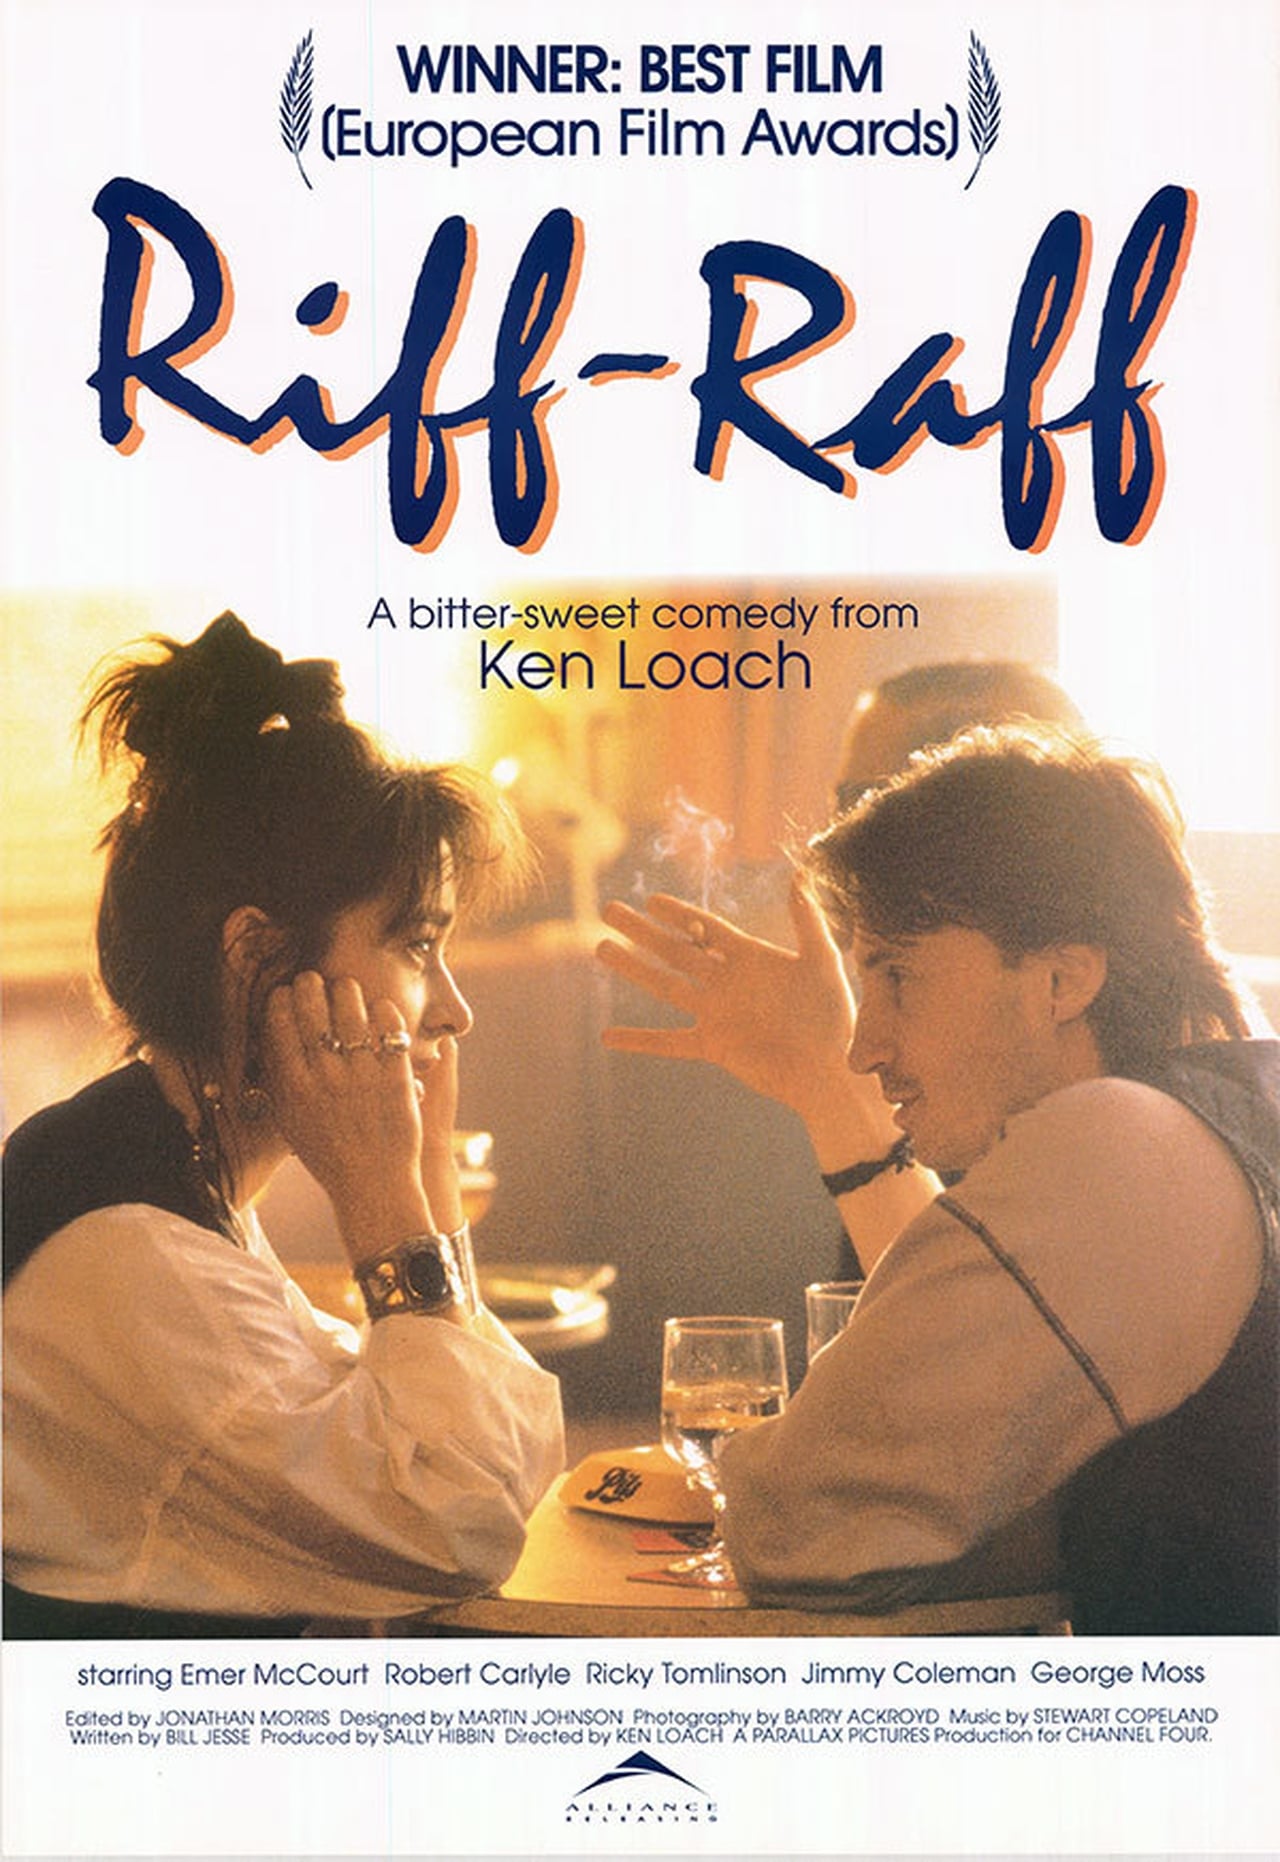 Riff-Raff (1993)